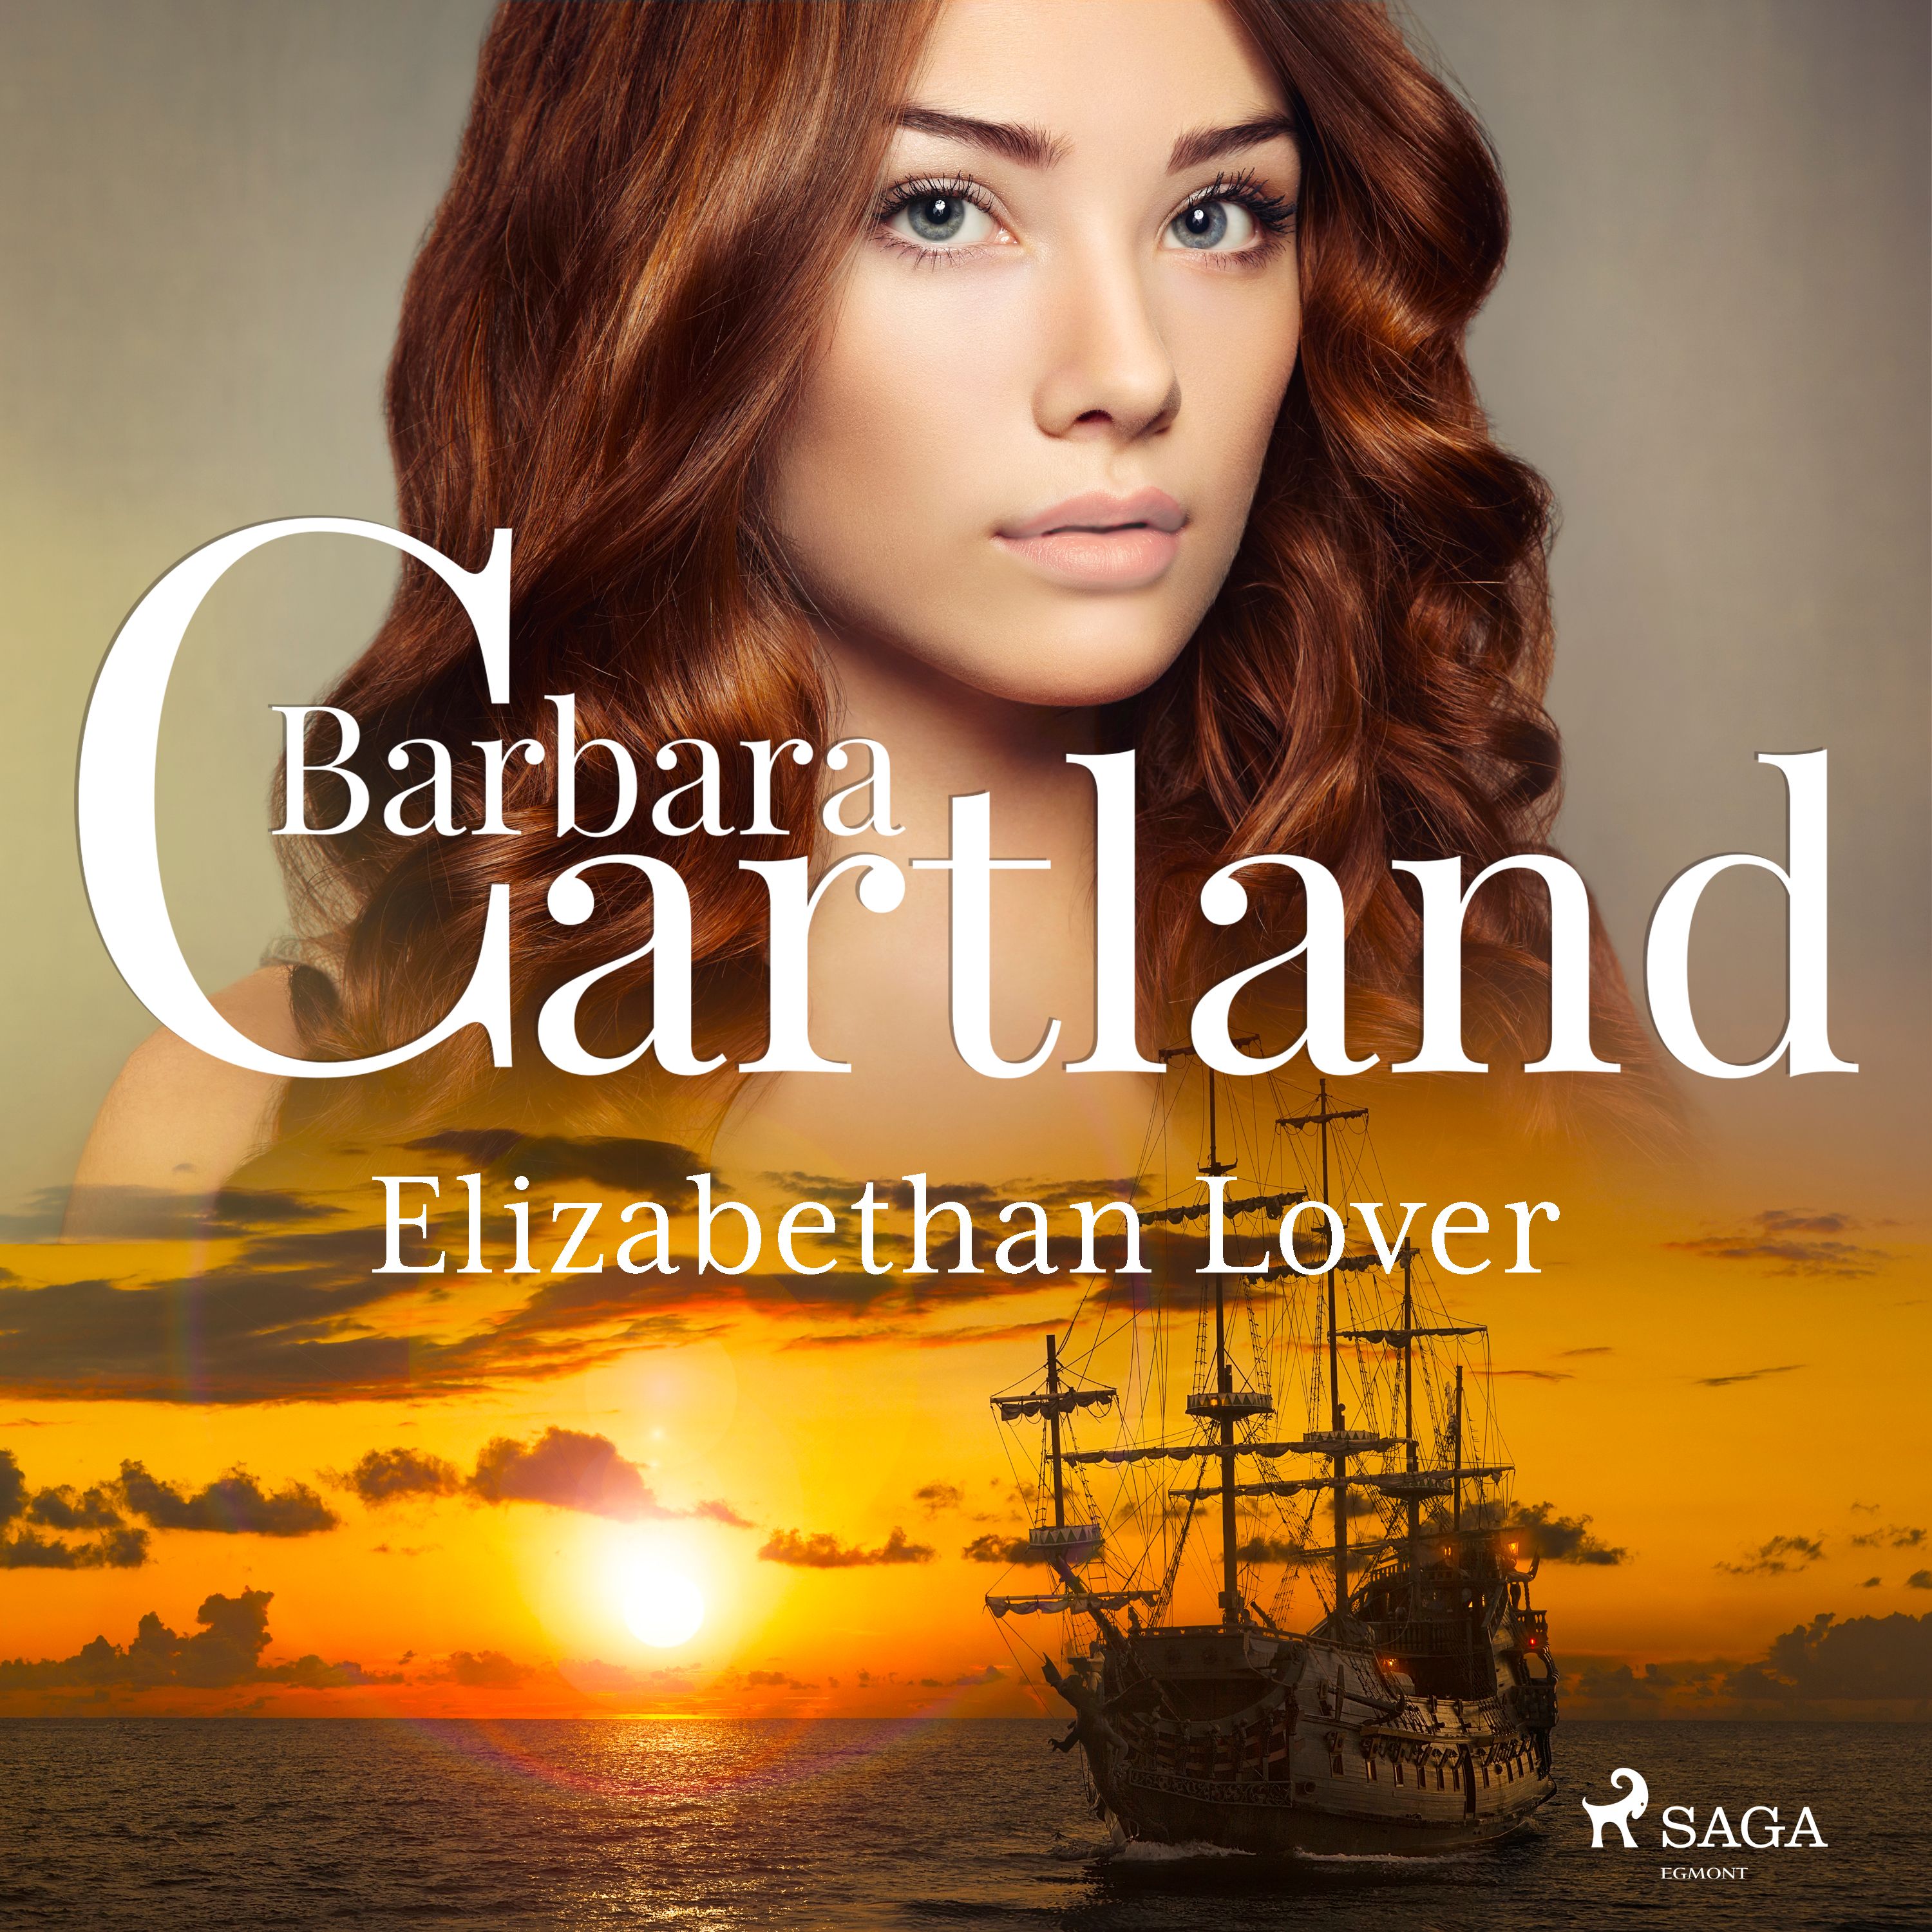 Elizabethan Lover, ljudbok av Barbara Cartland